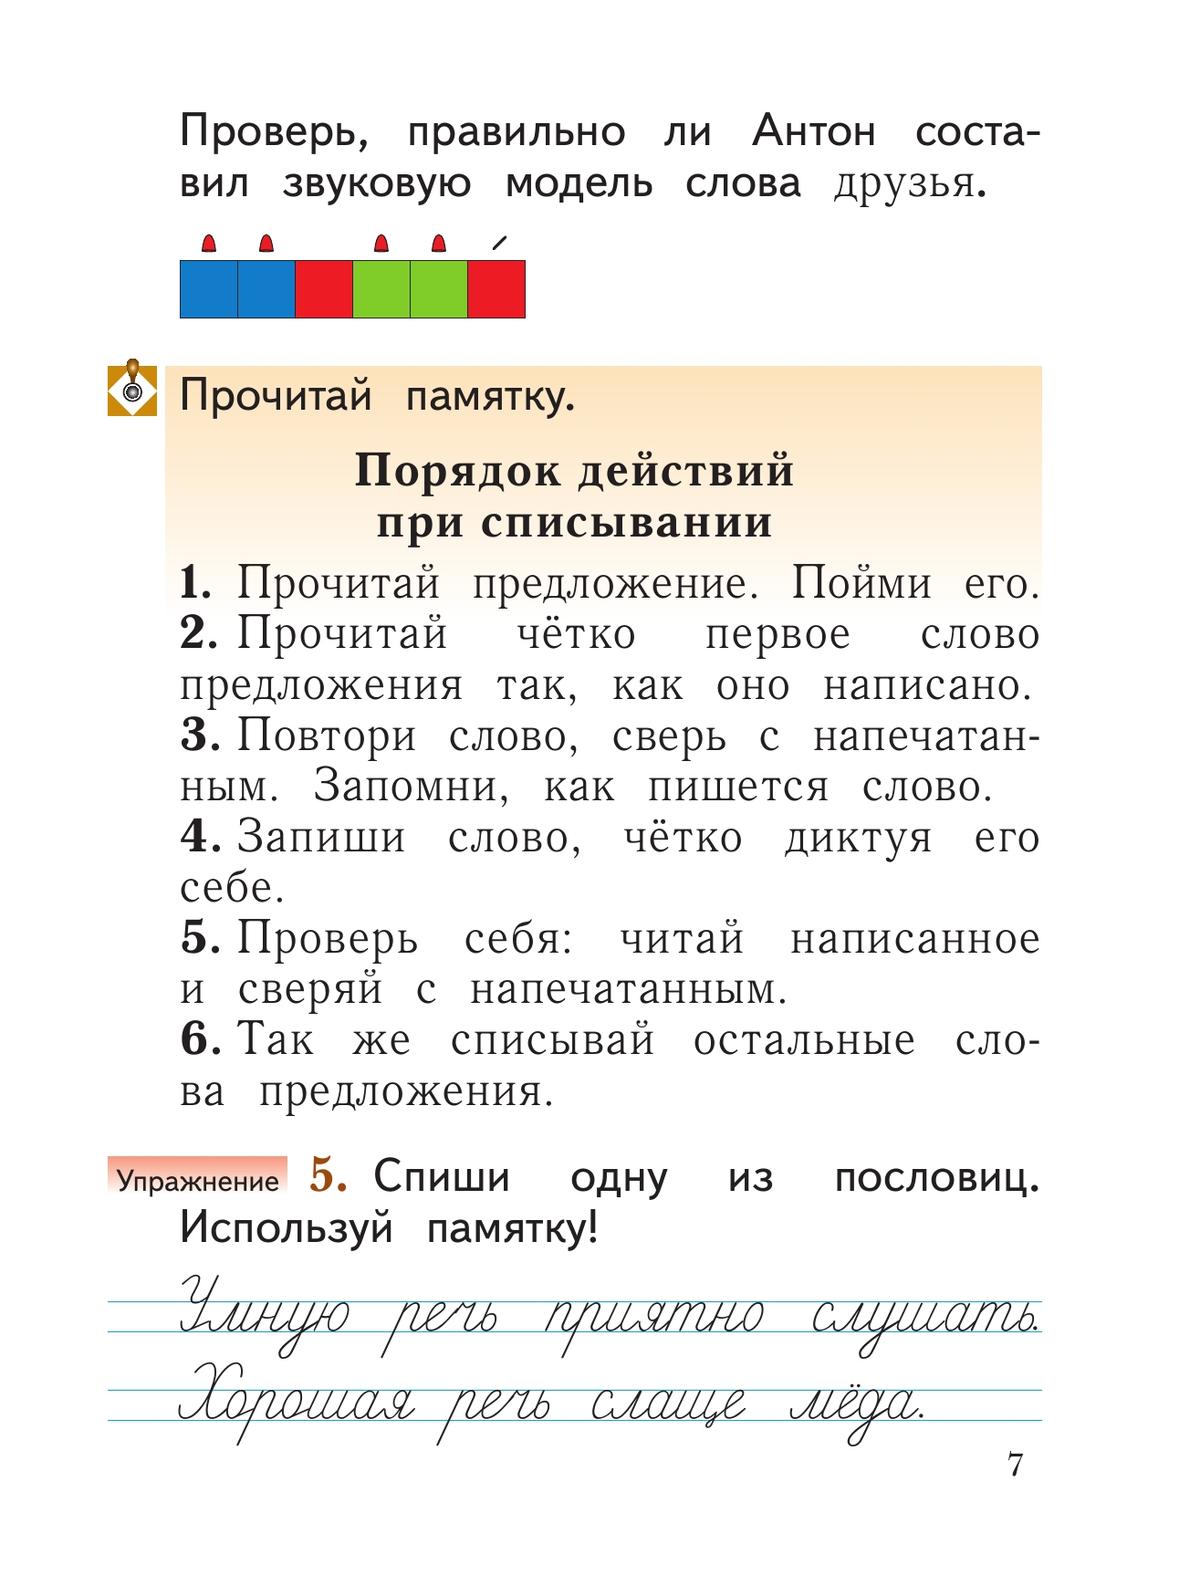 Русский язык. 1 класс. Учебное пособие 8